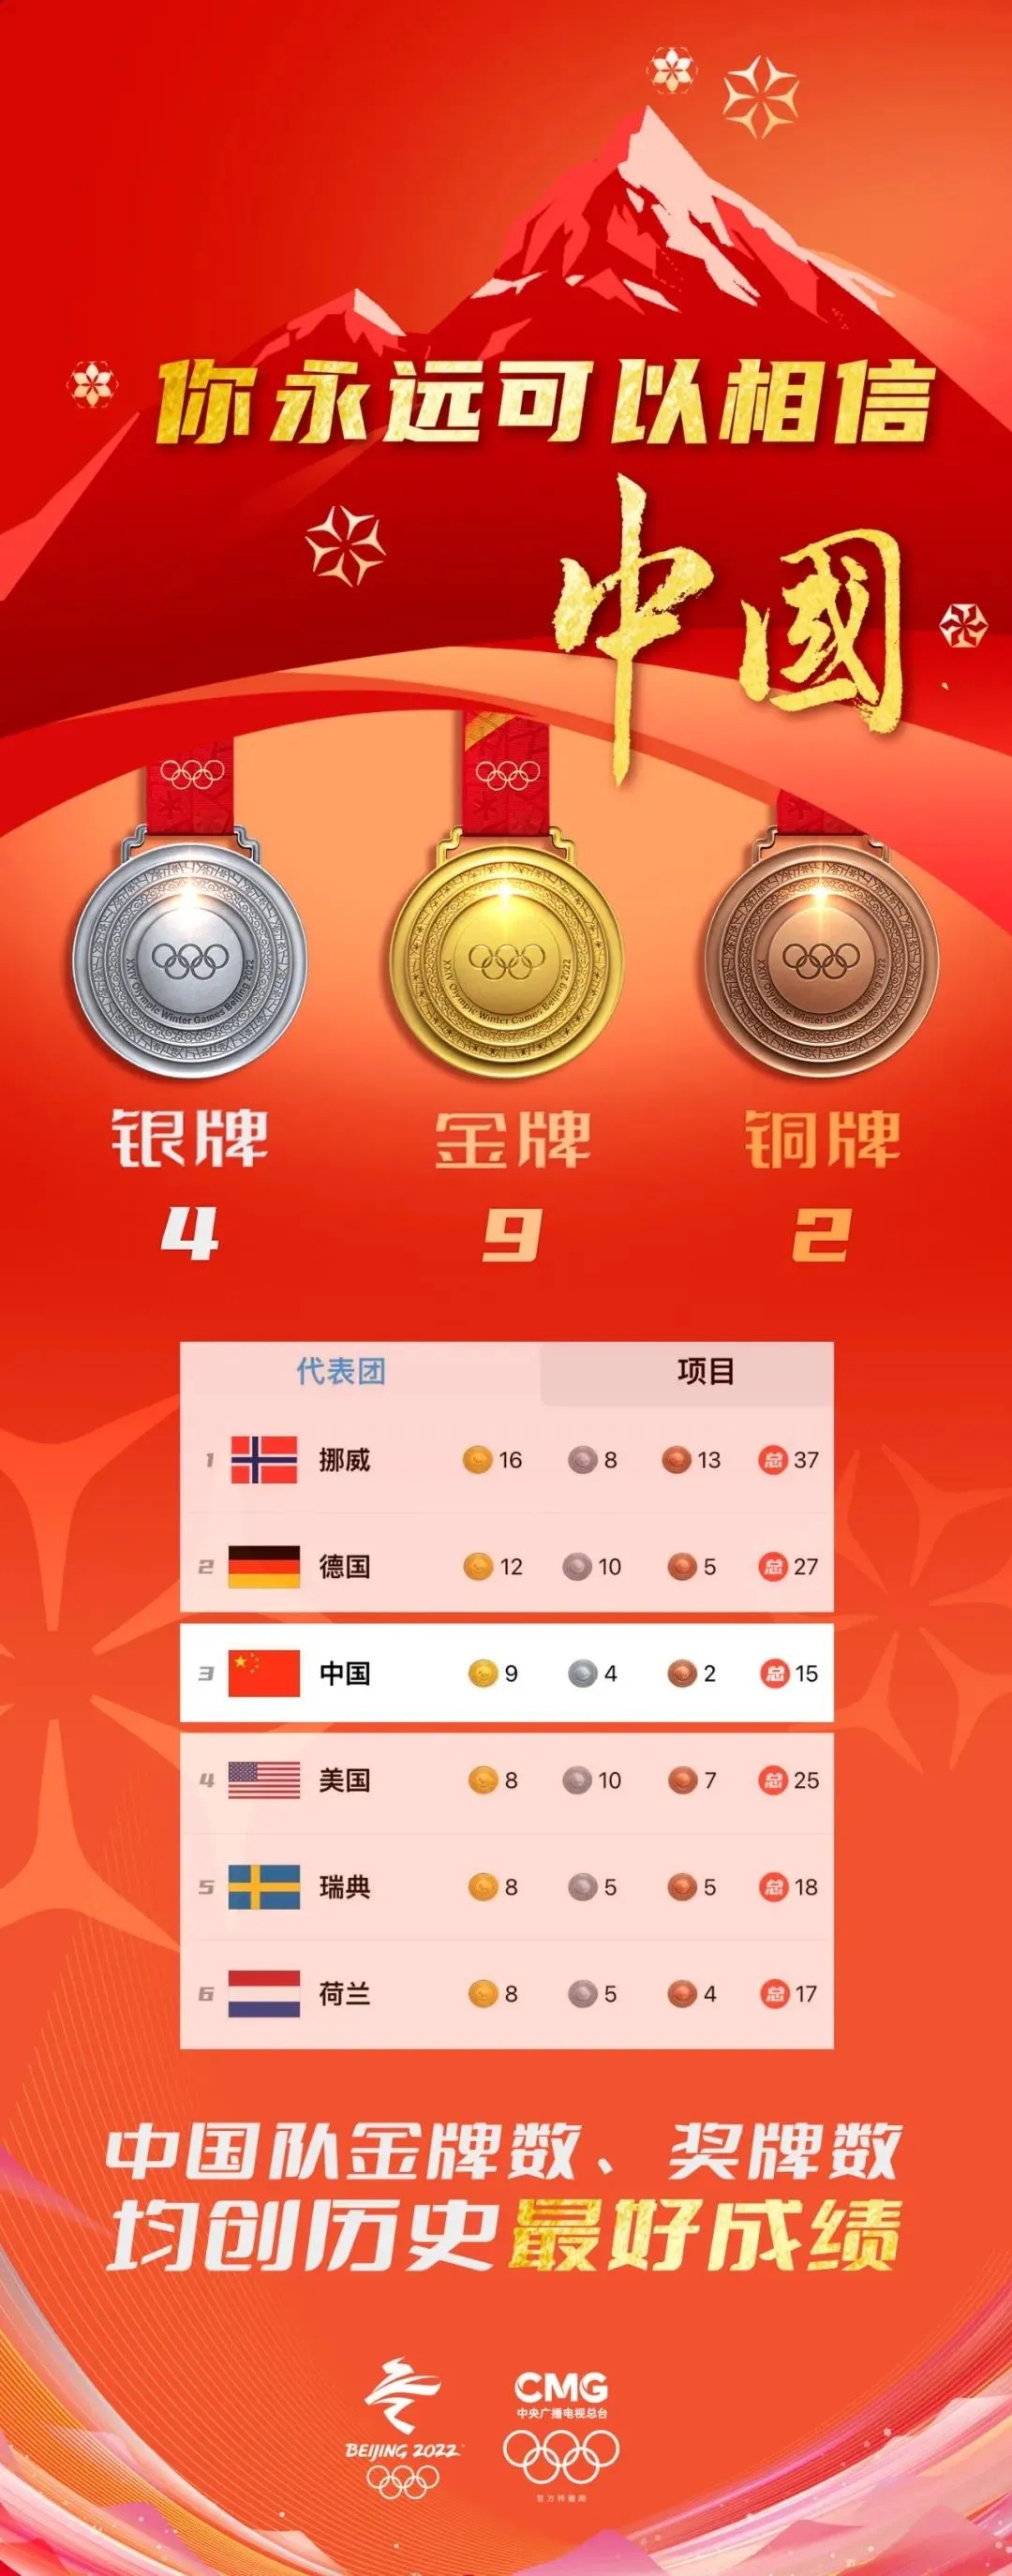 勇夺9枚金牌,4枚银牌,2枚铜牌,金牌数和奖牌数位列北京冬奥会奖牌榜第